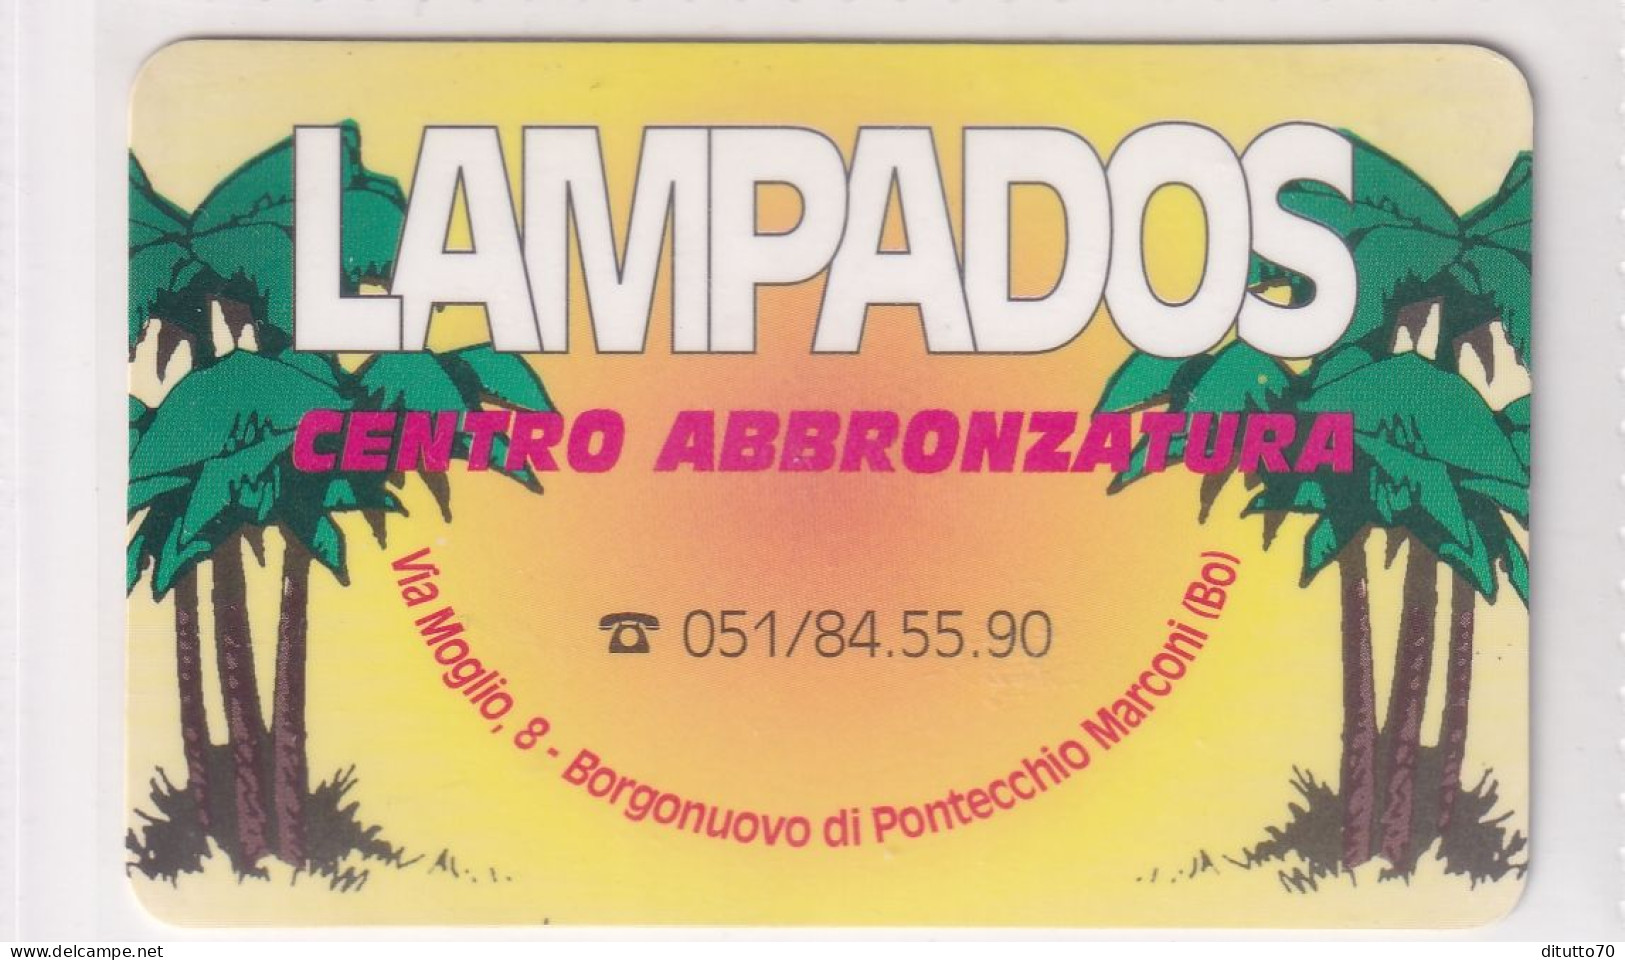 Calendarietto - Lampados - Borgonuovo Di Pontecchio Marconi - Anno 1997 - Kleinformat : 1991-00